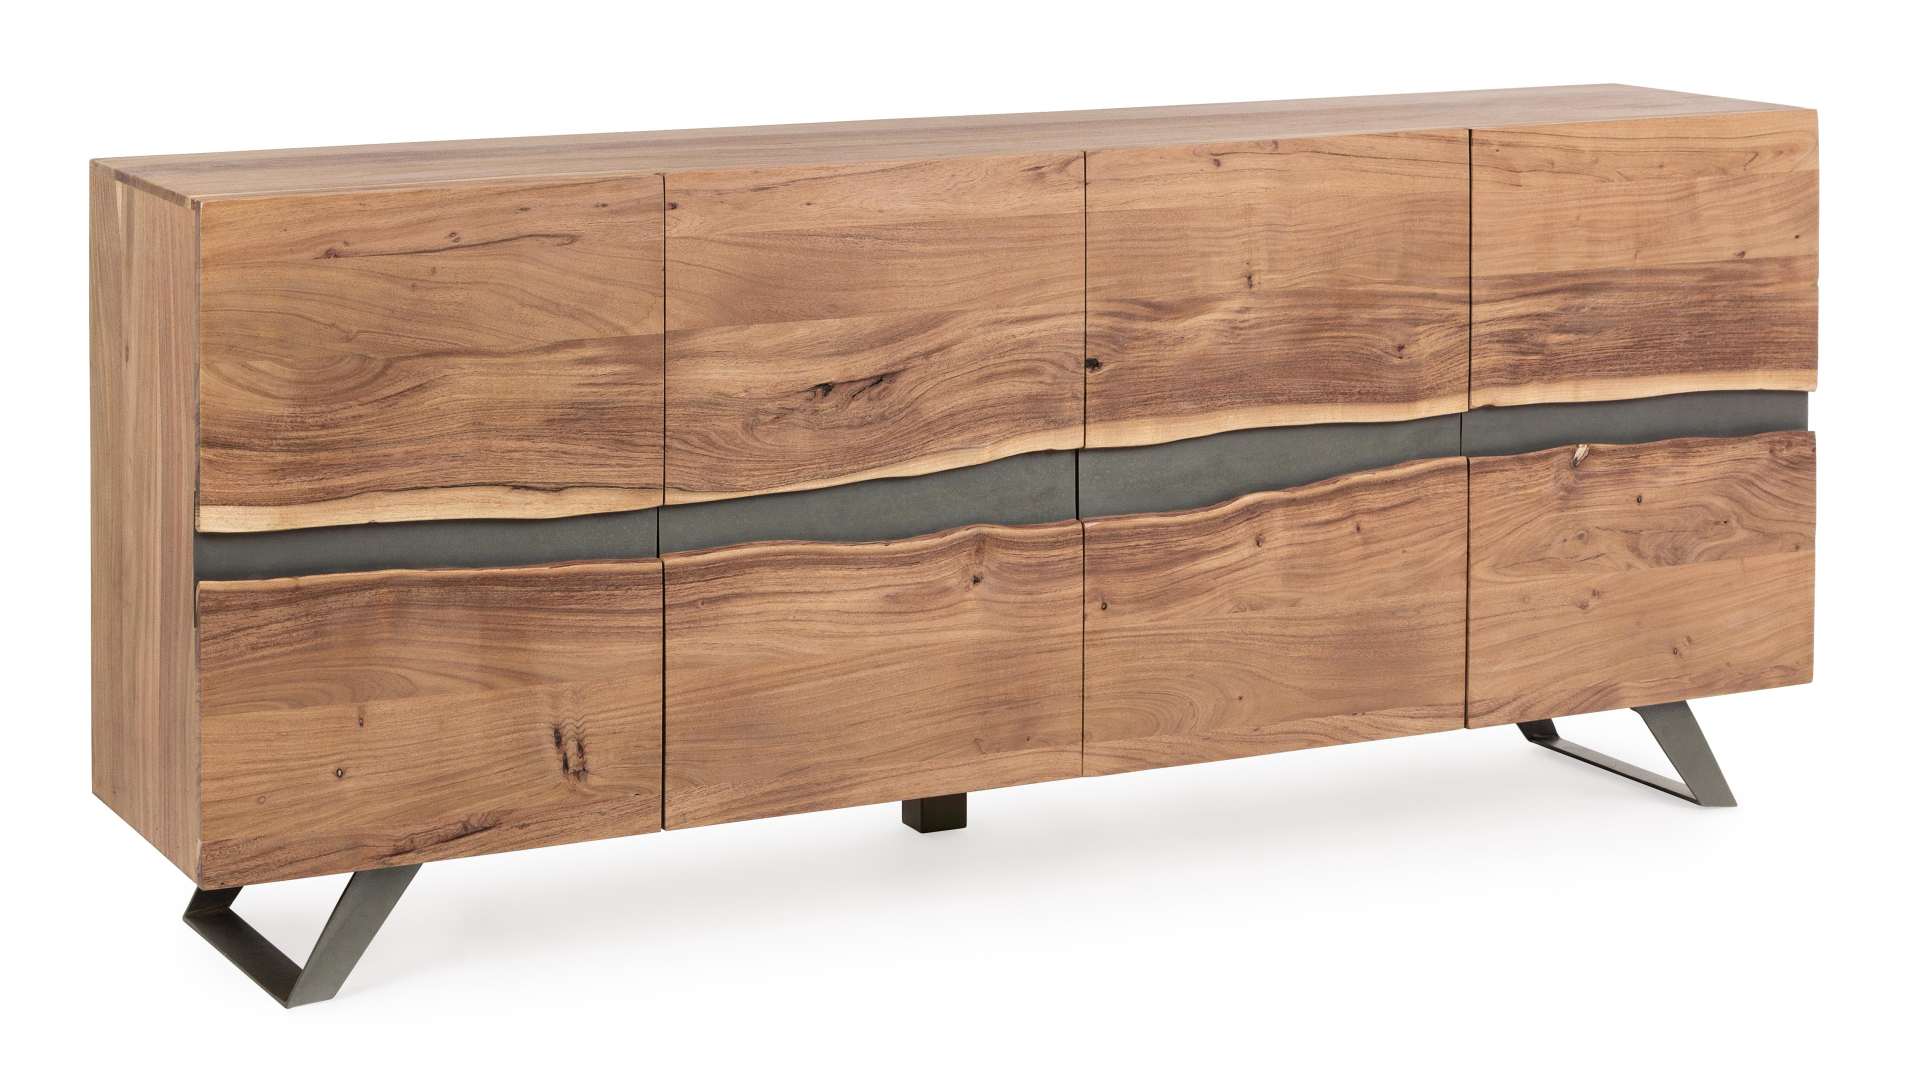 Das Sideboard Aron überzeugt mit seinem modernen Design. Gefertigt wurde es aus Akazien-Holz, welches einen natürlichen Farbton besitzt. Das Gestell ist aus Metall und hat eine schwarze Farbe. Das Sideboard verfügt über vier Türen. Die Breite beträgt 198 